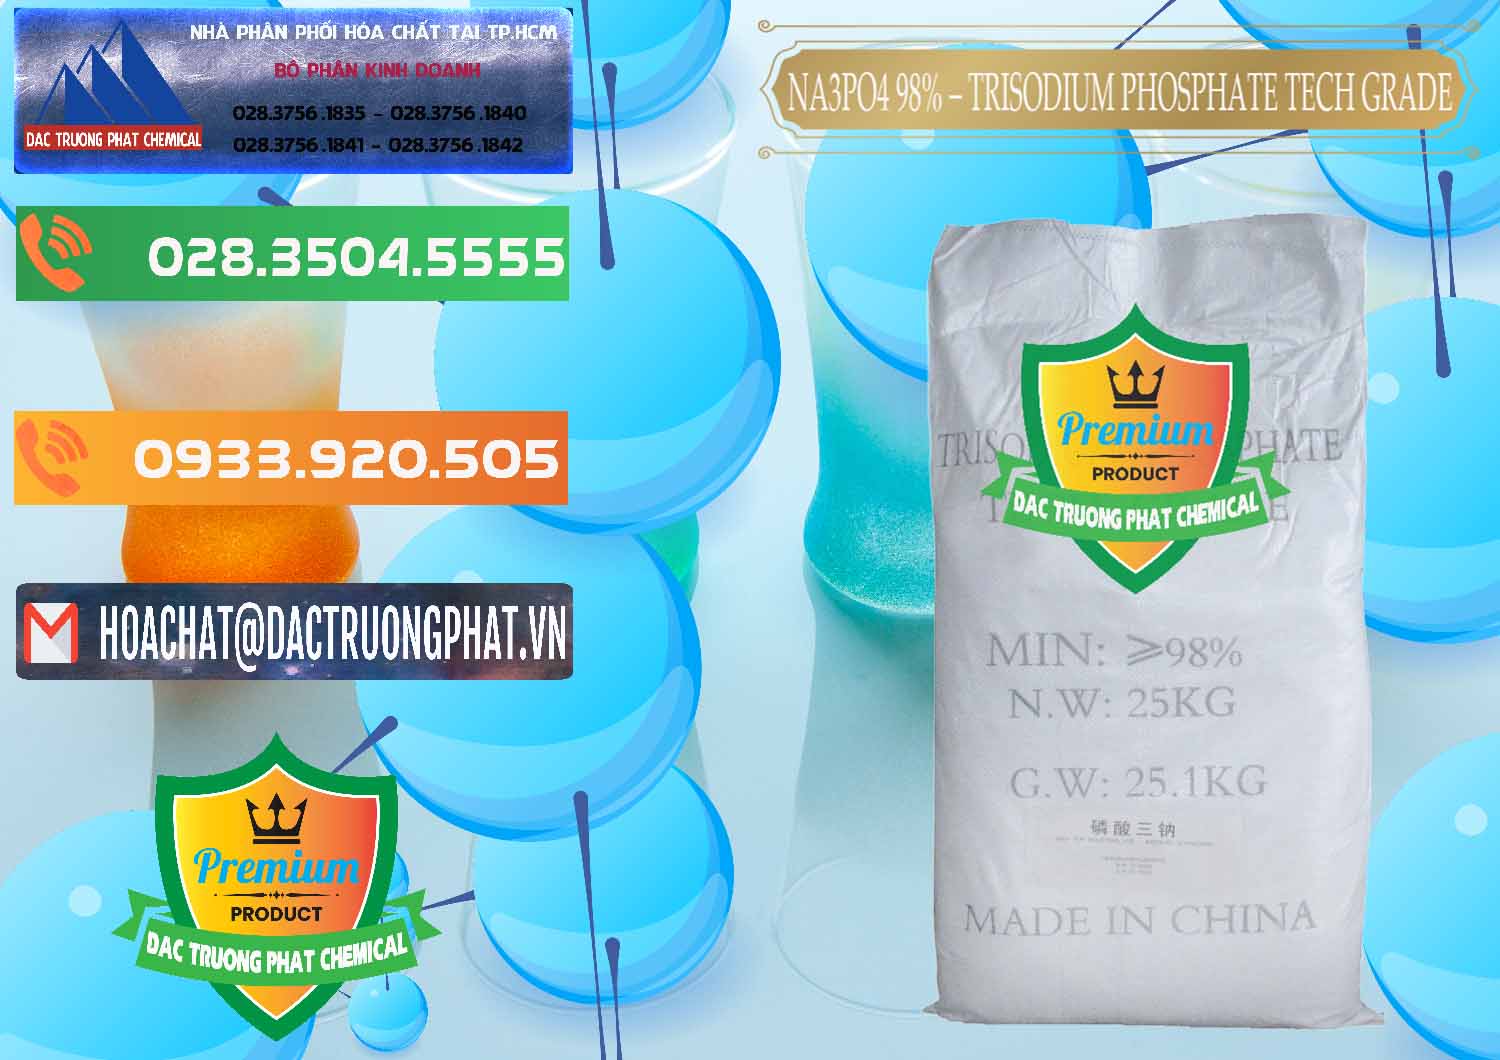 Cty bán ( cung cấp ) Na3PO4 – Trisodium Phosphate 96% Tech Grade Trung Quốc China - 0104 - Công ty cung cấp và phân phối hóa chất tại TP.HCM - hoachatxulynuoc.com.vn